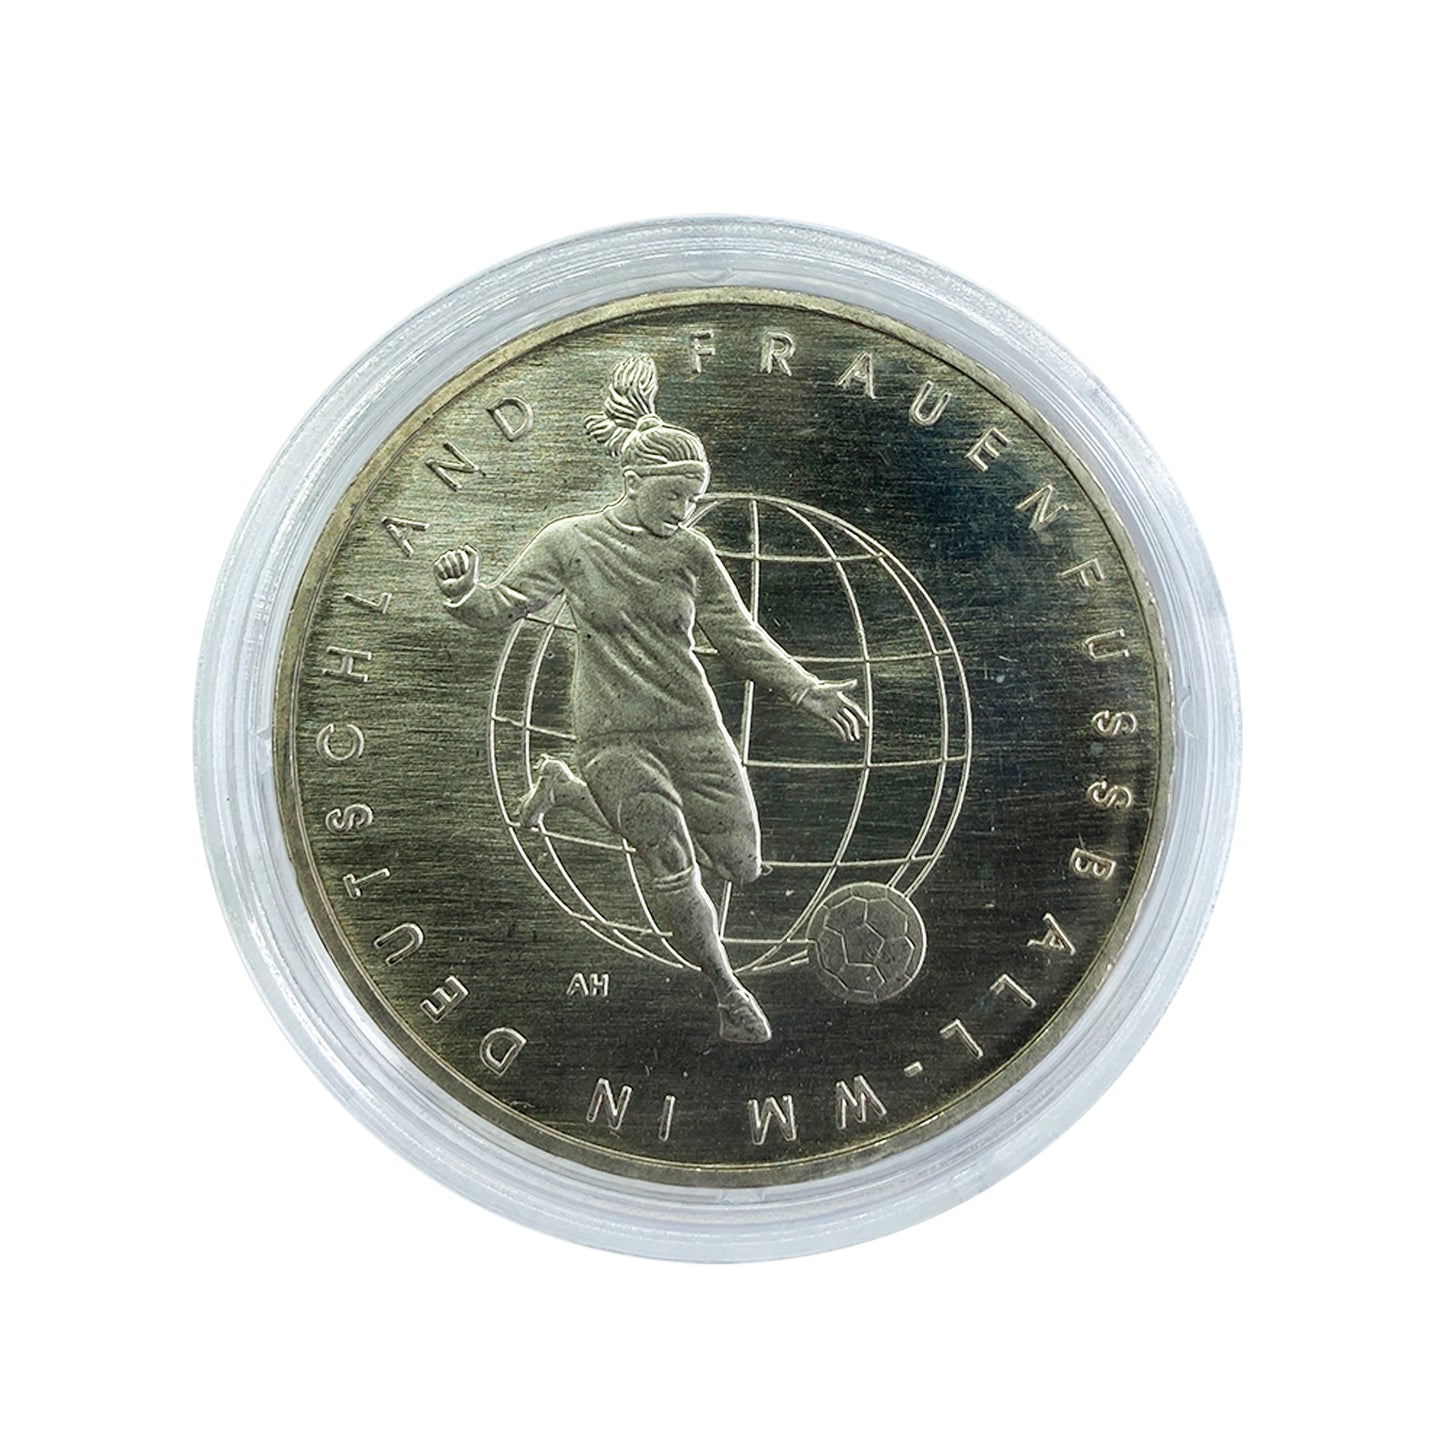 Alemania - Moneda 10 euros cuproníquel 2011 - Copa Mundial de Futbol femenino Alemania 2011